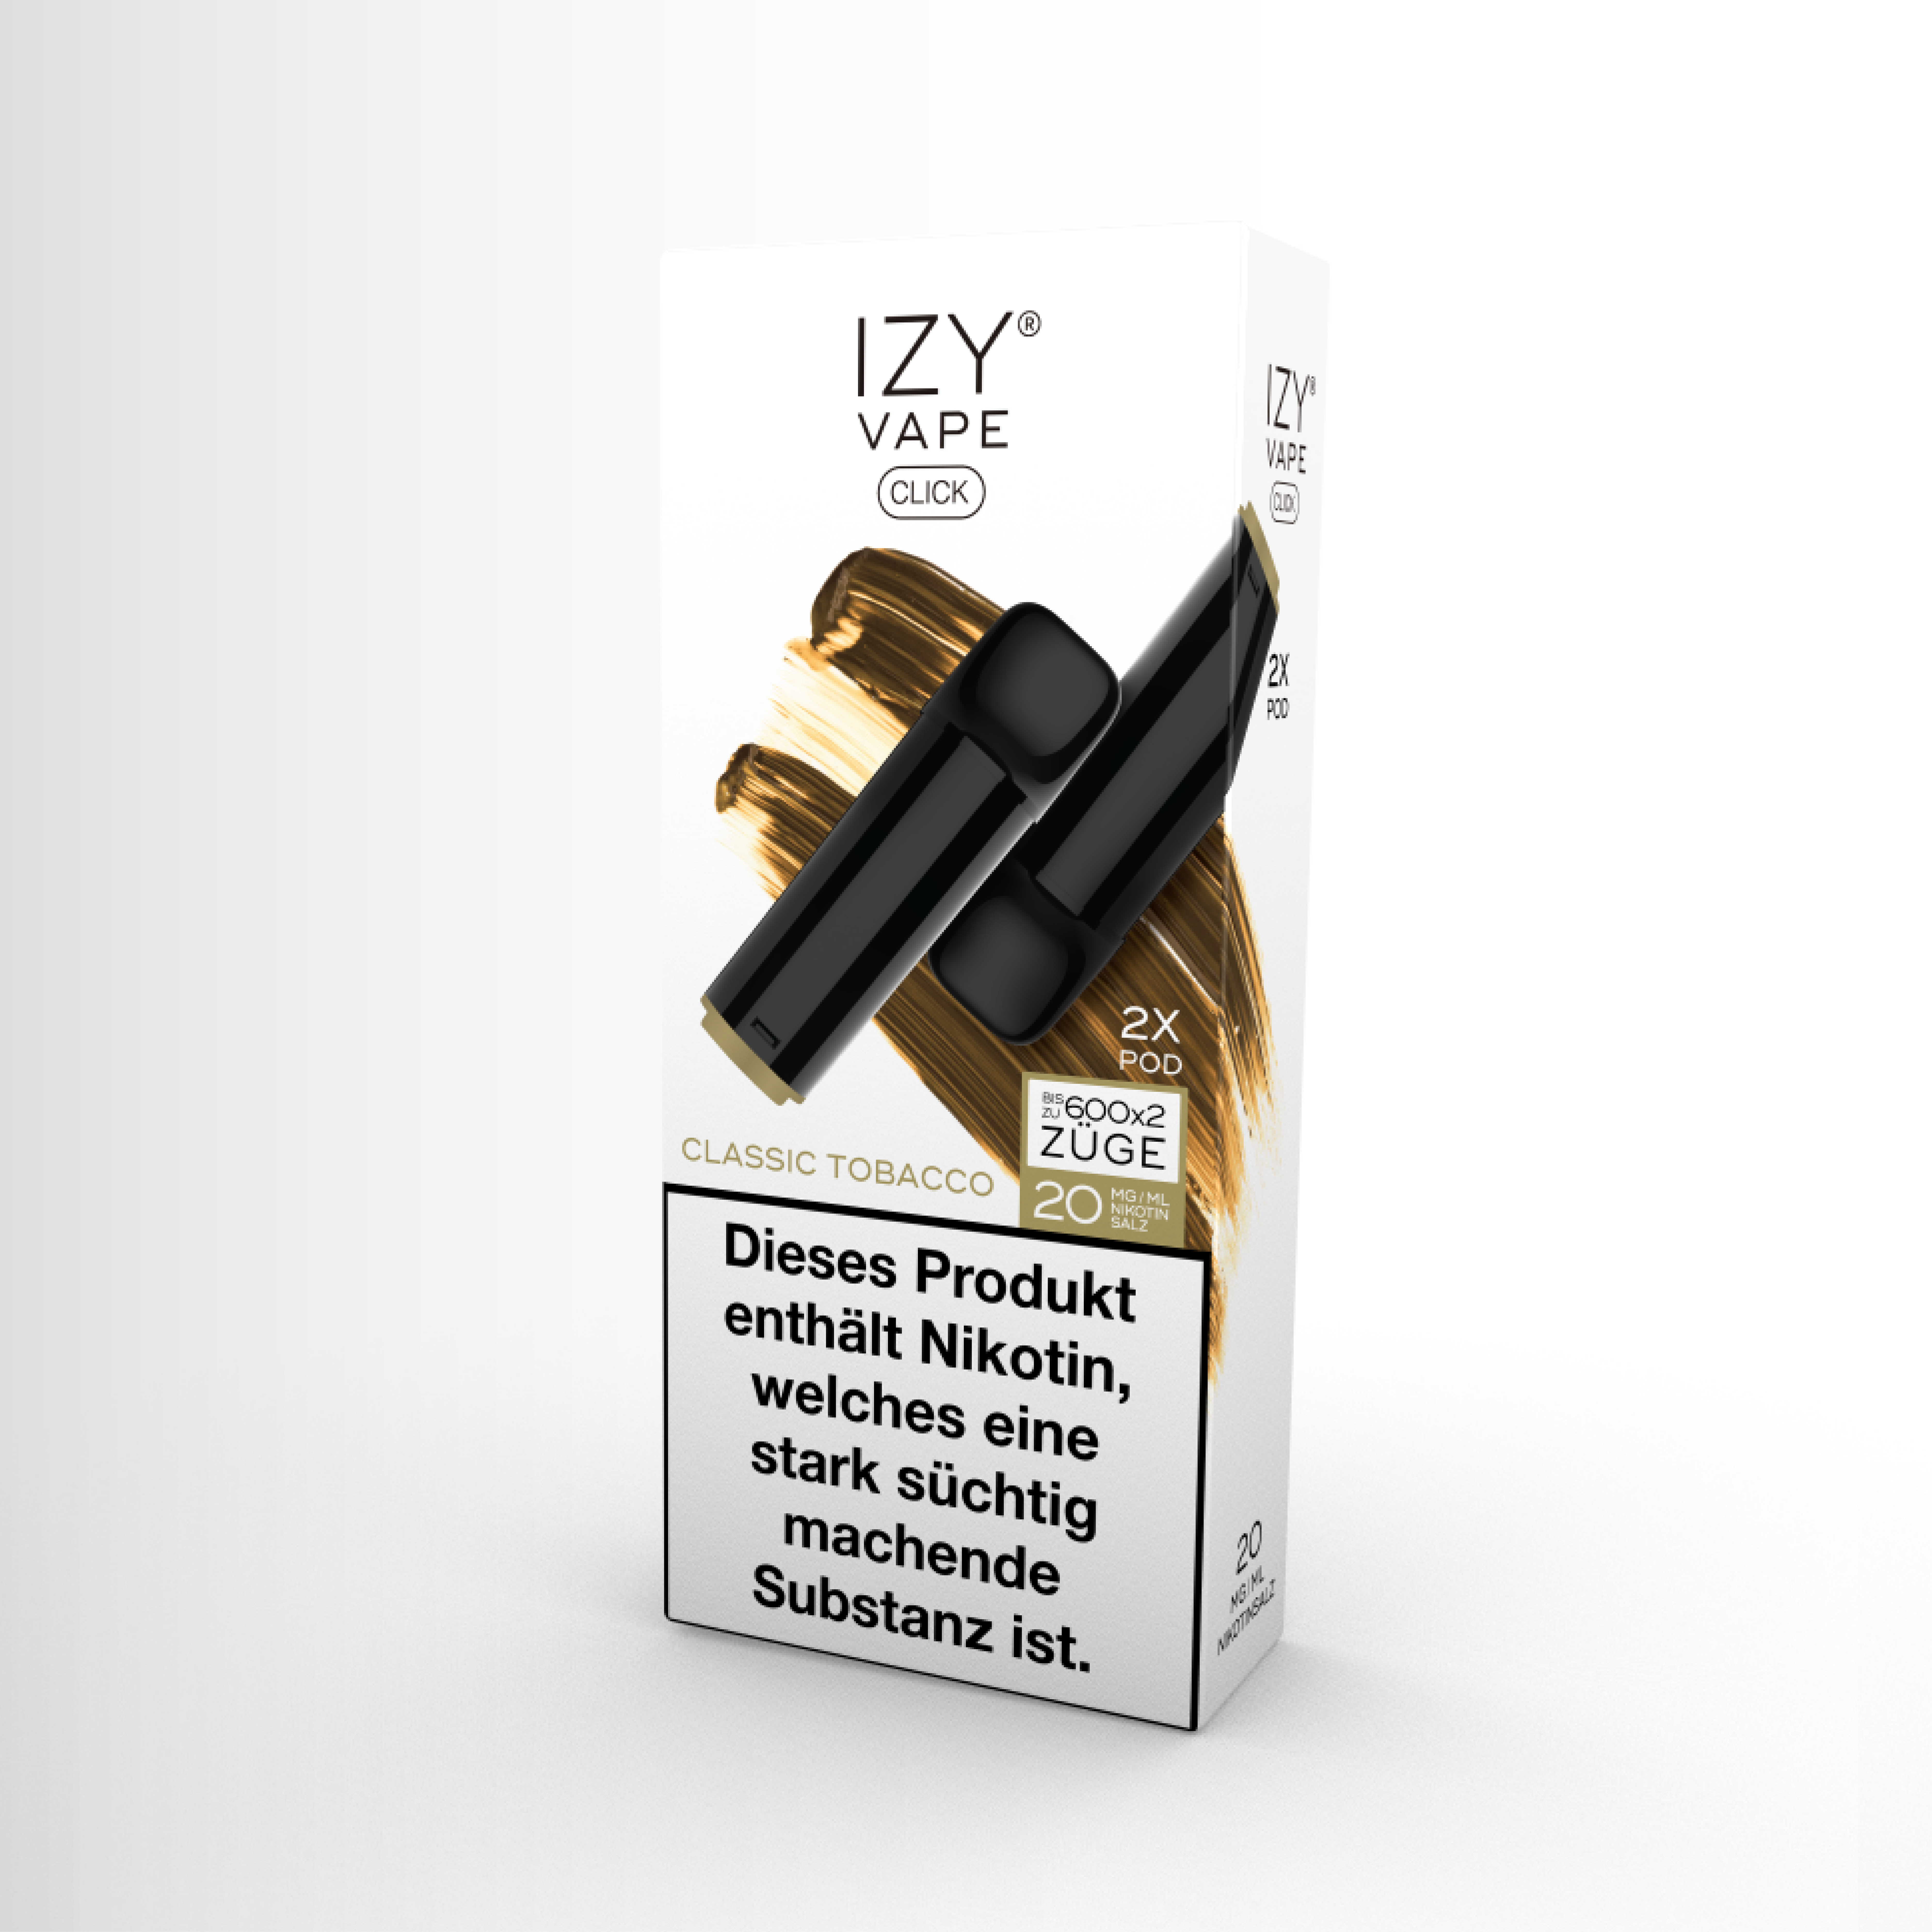 IZY Click POD Classic Tobacco von IZYVAPE kaufen